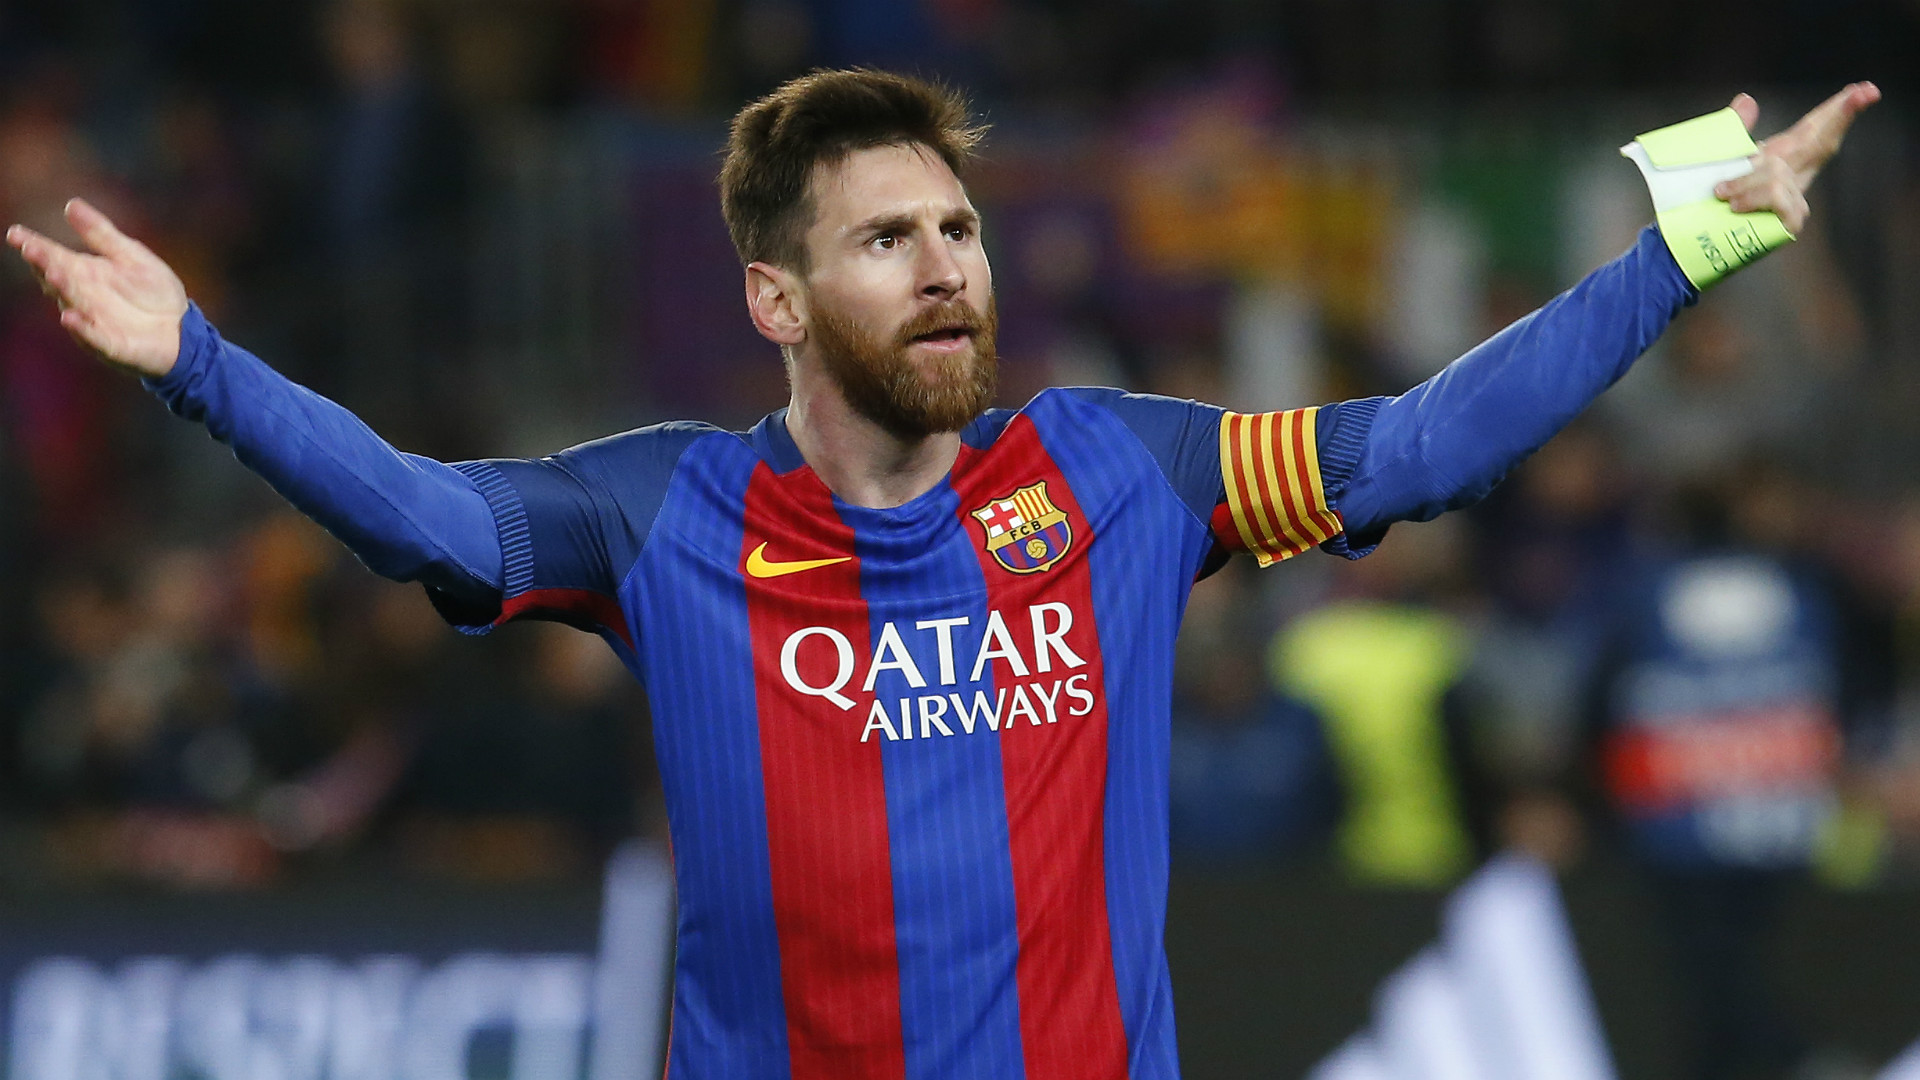 Điểm tin tối 03/09: M.U săn hàng thải Man City; Messi dứt tình Barca? - Bóng Đá